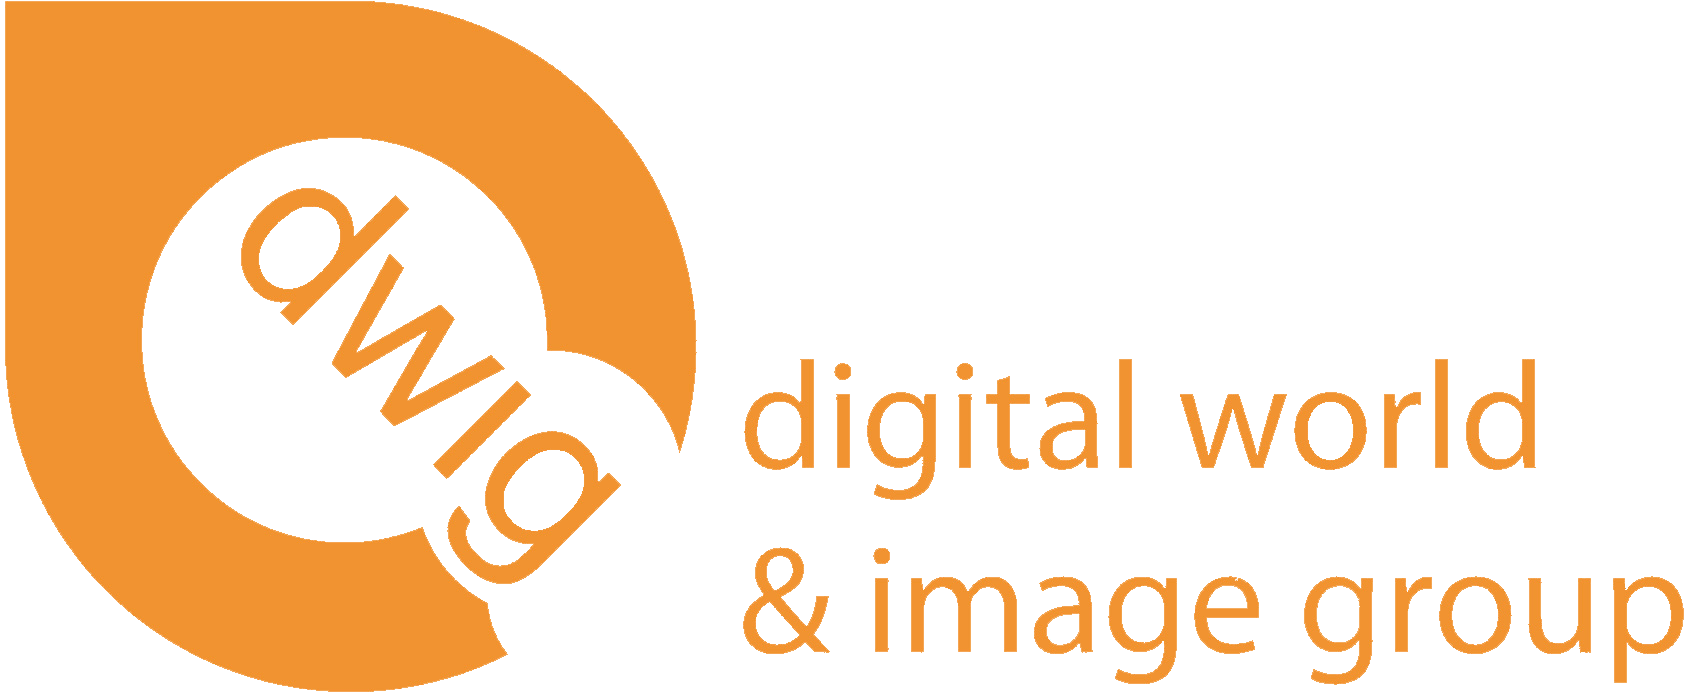 Digital World & Image Group logo